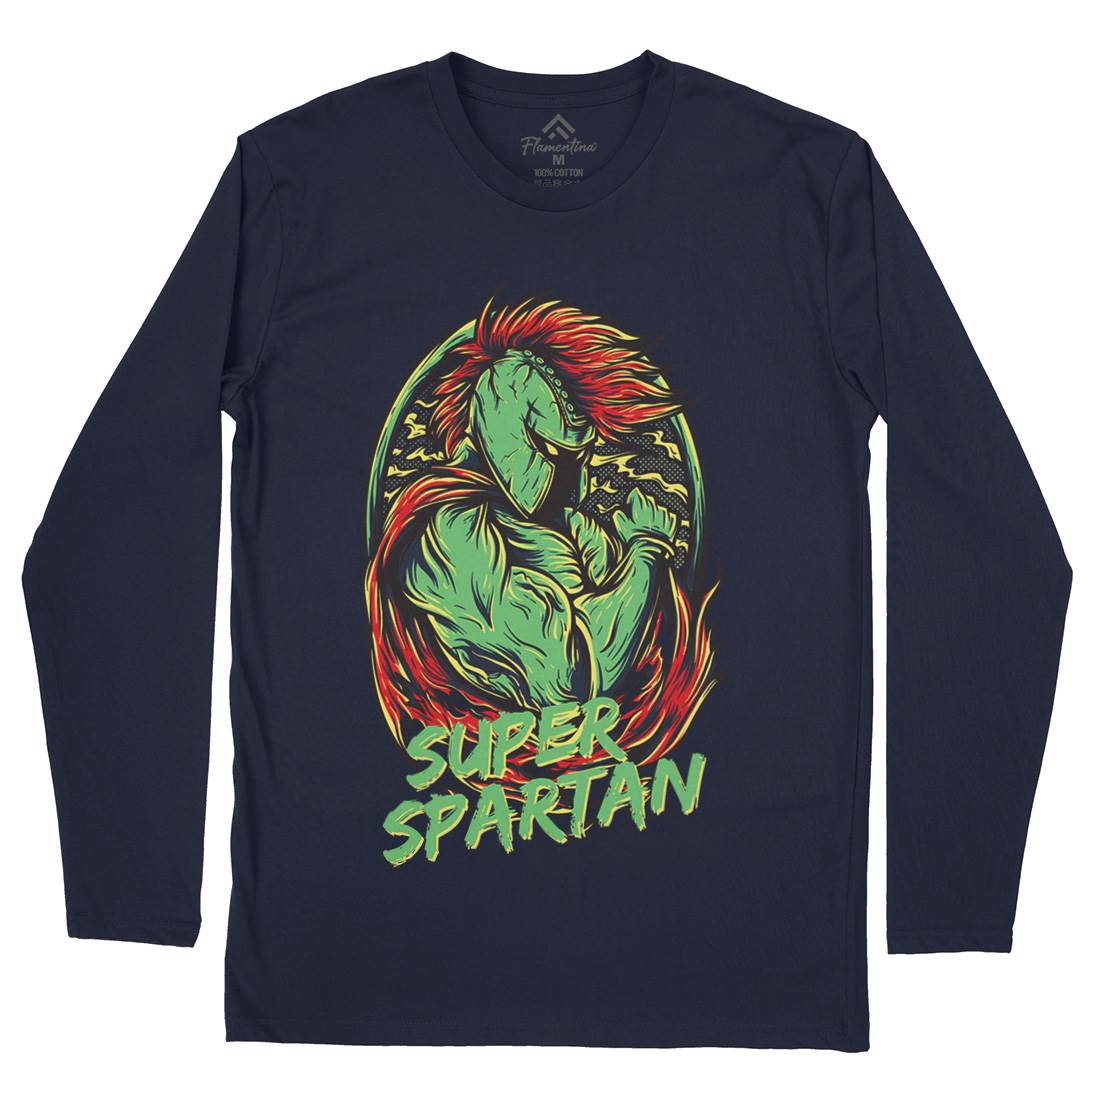 Super Spartan Mens Long Sleeve T-Shirt Warriors D843